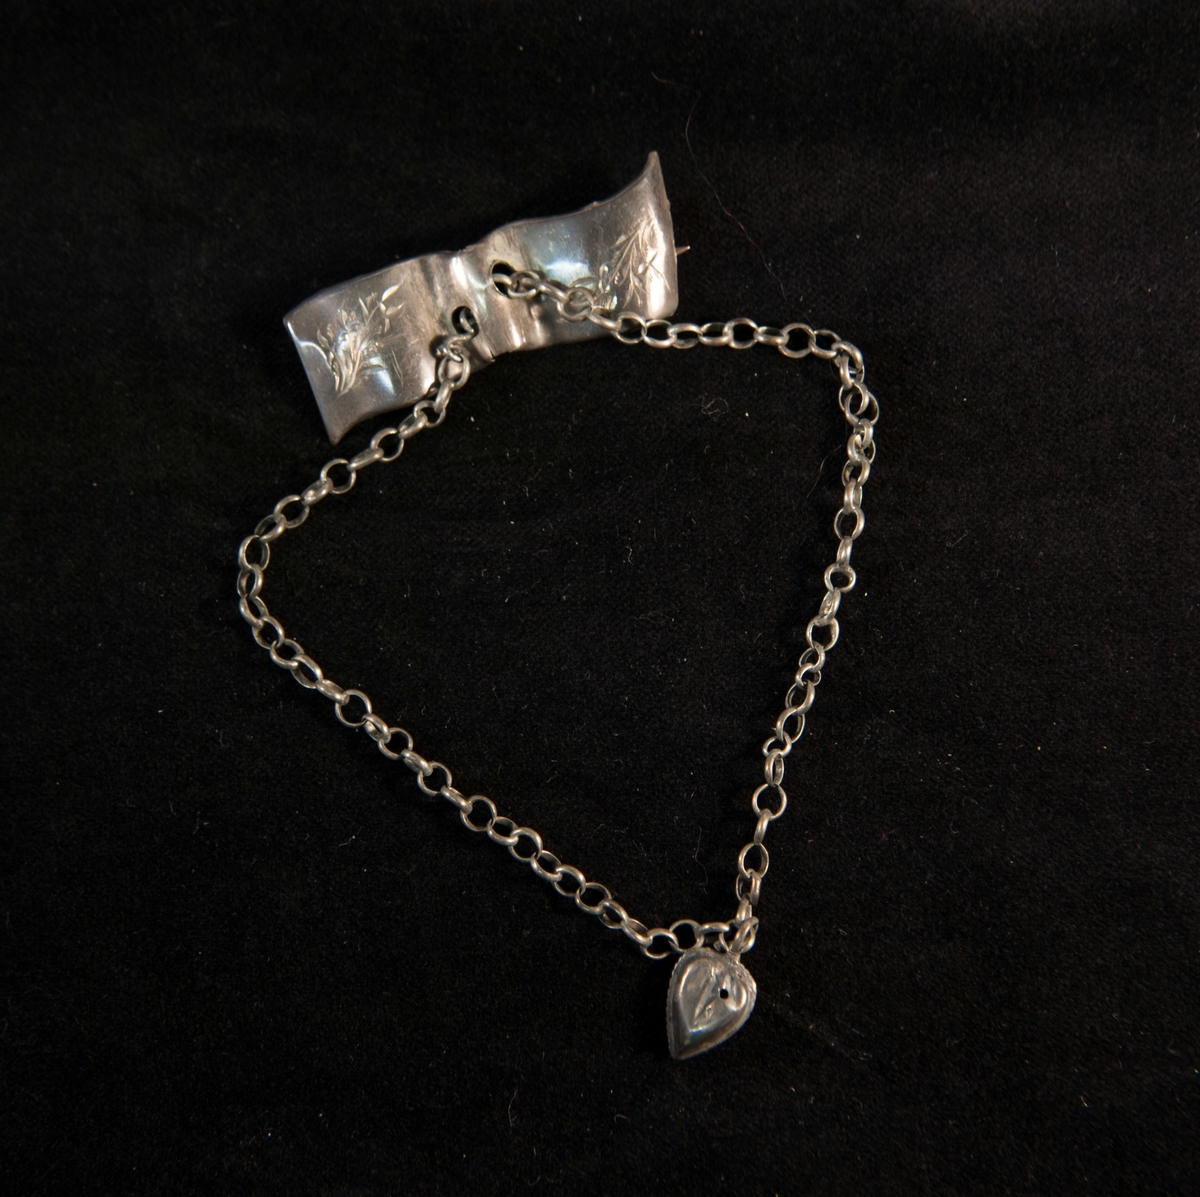 En rektangulär brosch av silverliknande metall med graverad bladdekor. I mitten hänger en kedja med ett pressat hjärta av samma metall. Saknar stämplar.